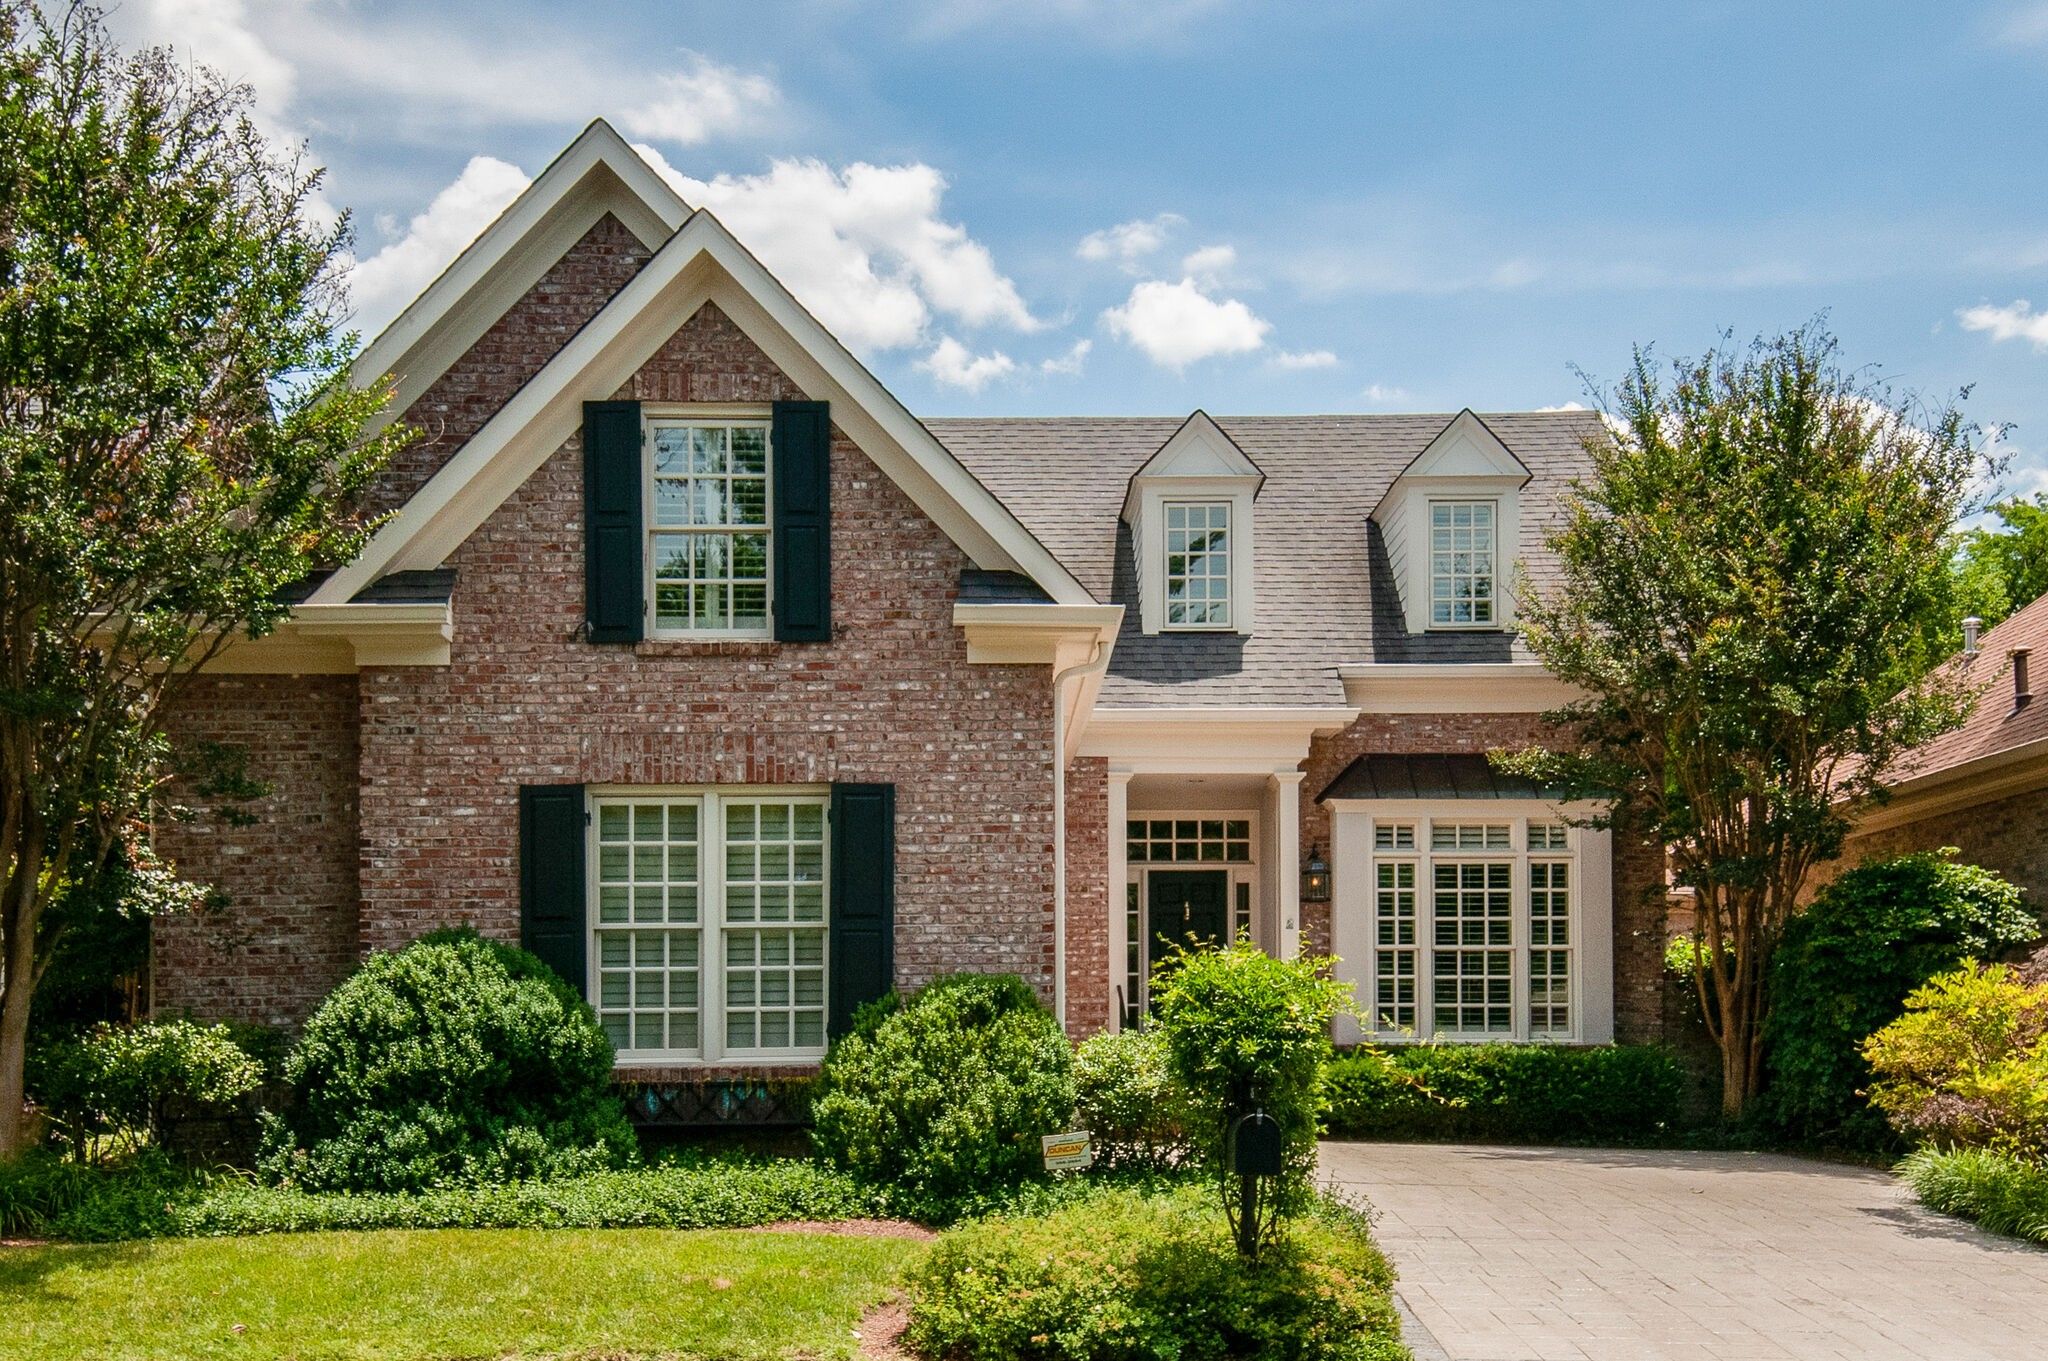 Prestwick Homes For Sale | Nashville TN 37205